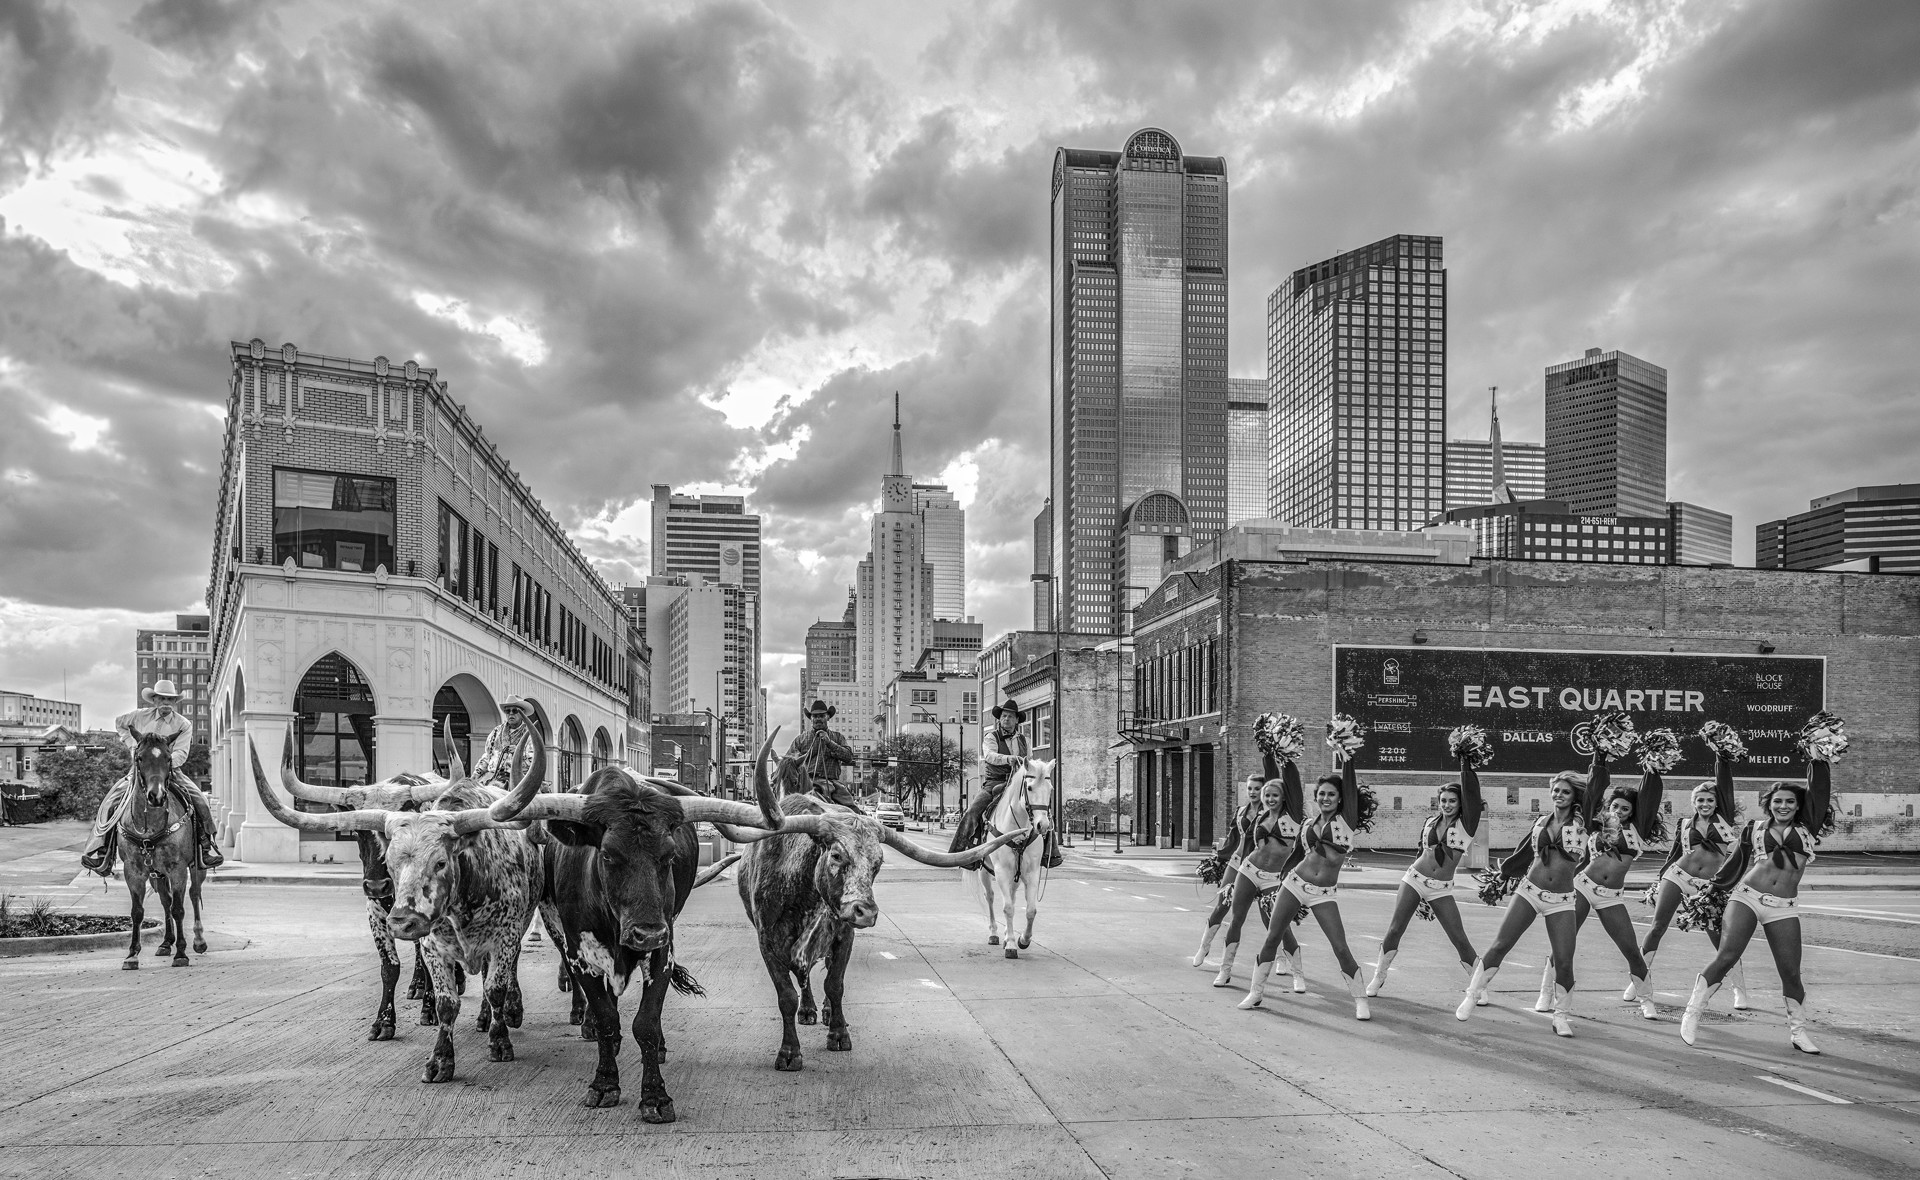 The Dallas Cowboys (B&W) by David Yarrow